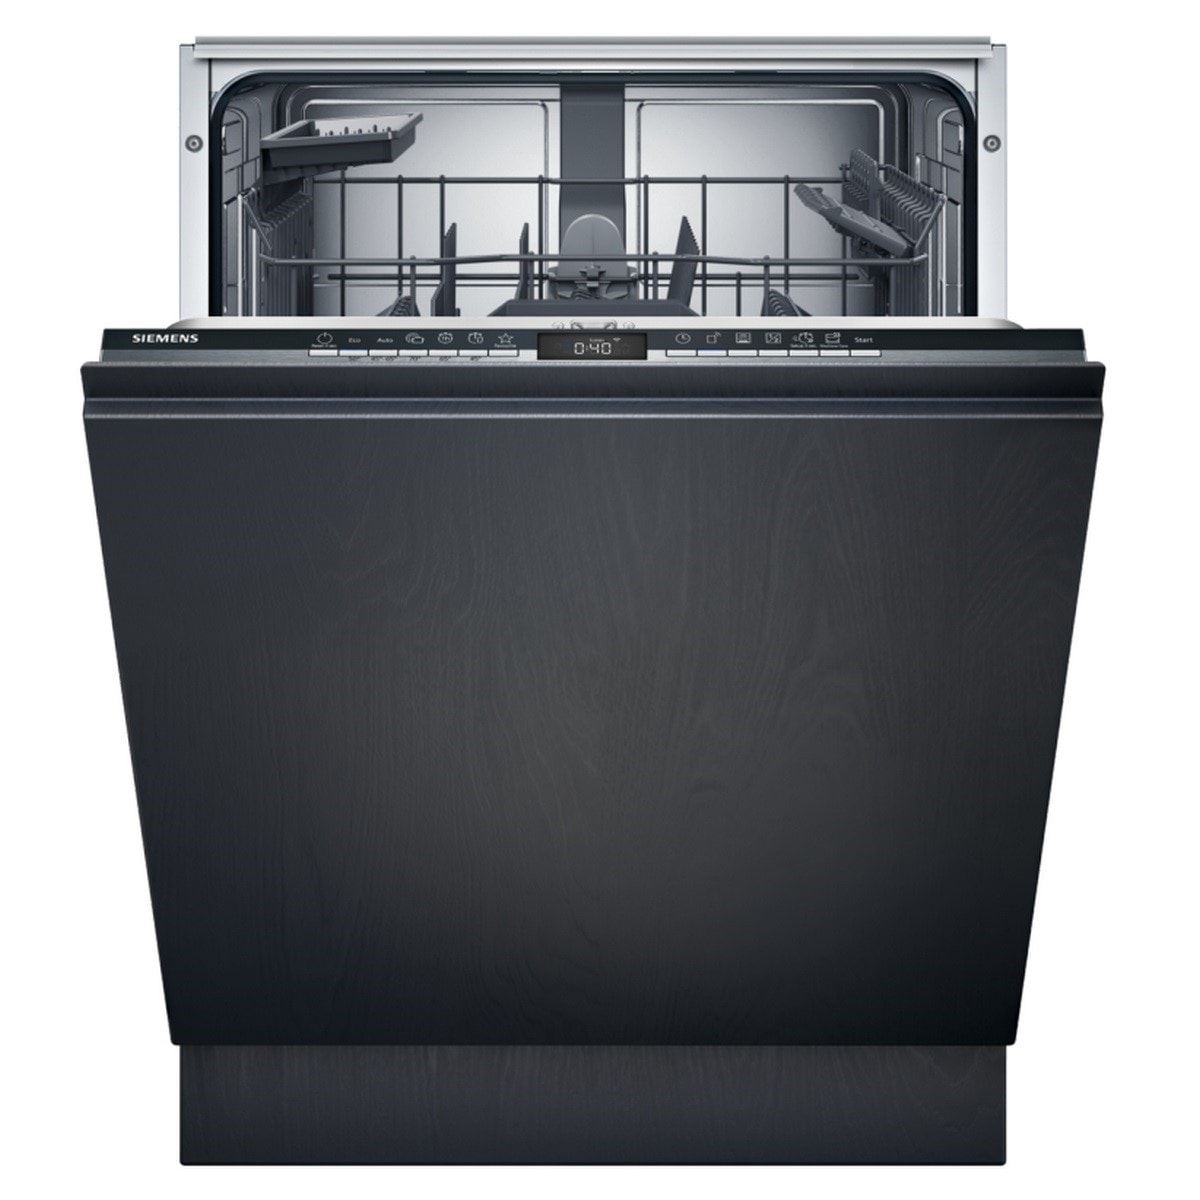 Lave-vaisselle Bosch Lave-vaisselle 60cm 13 couverts 42db gris